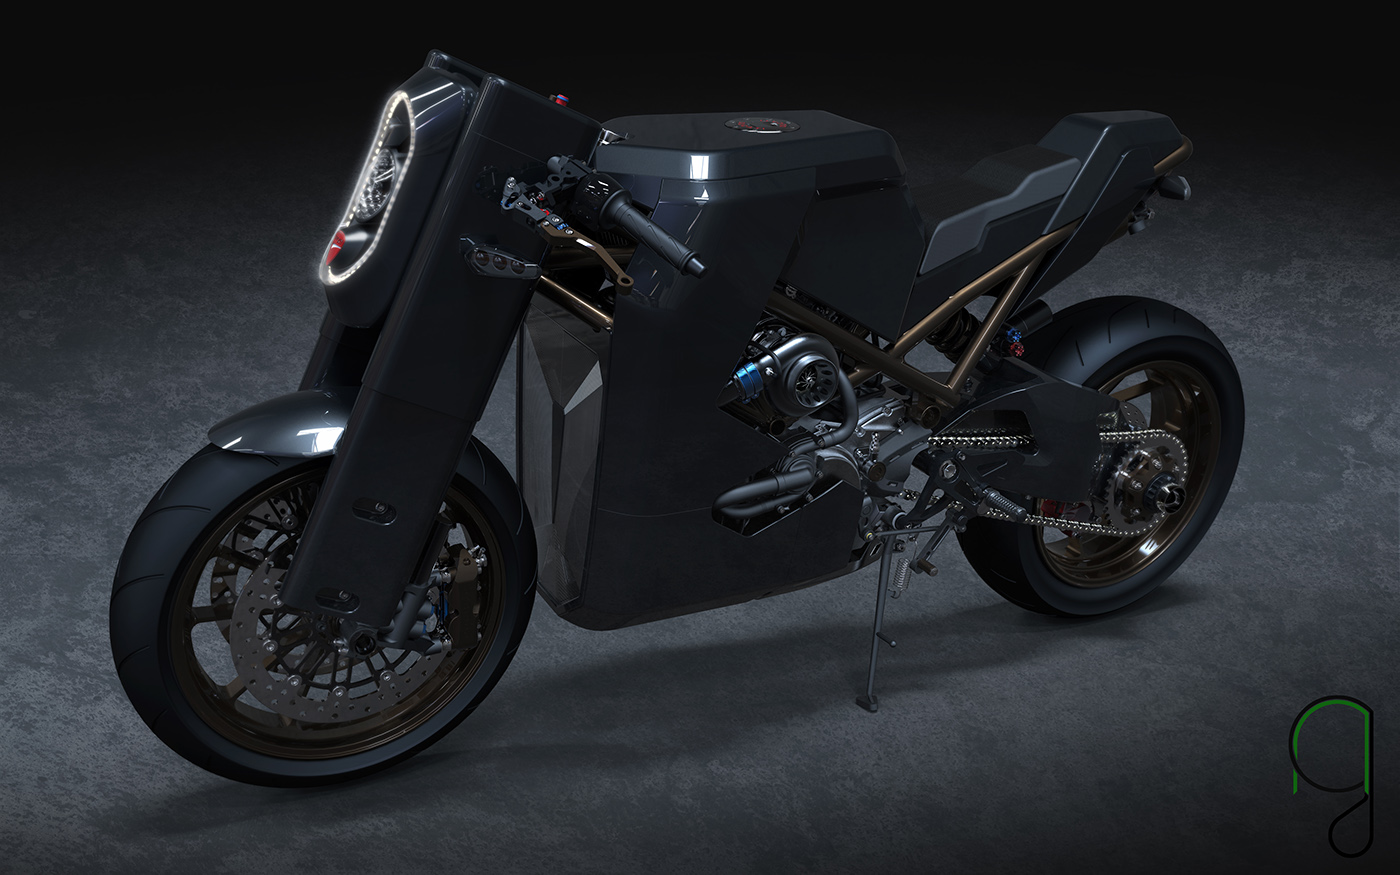 Motor Bike Ducati bike concept Ducati Concept Auto car motorbike design concept concept